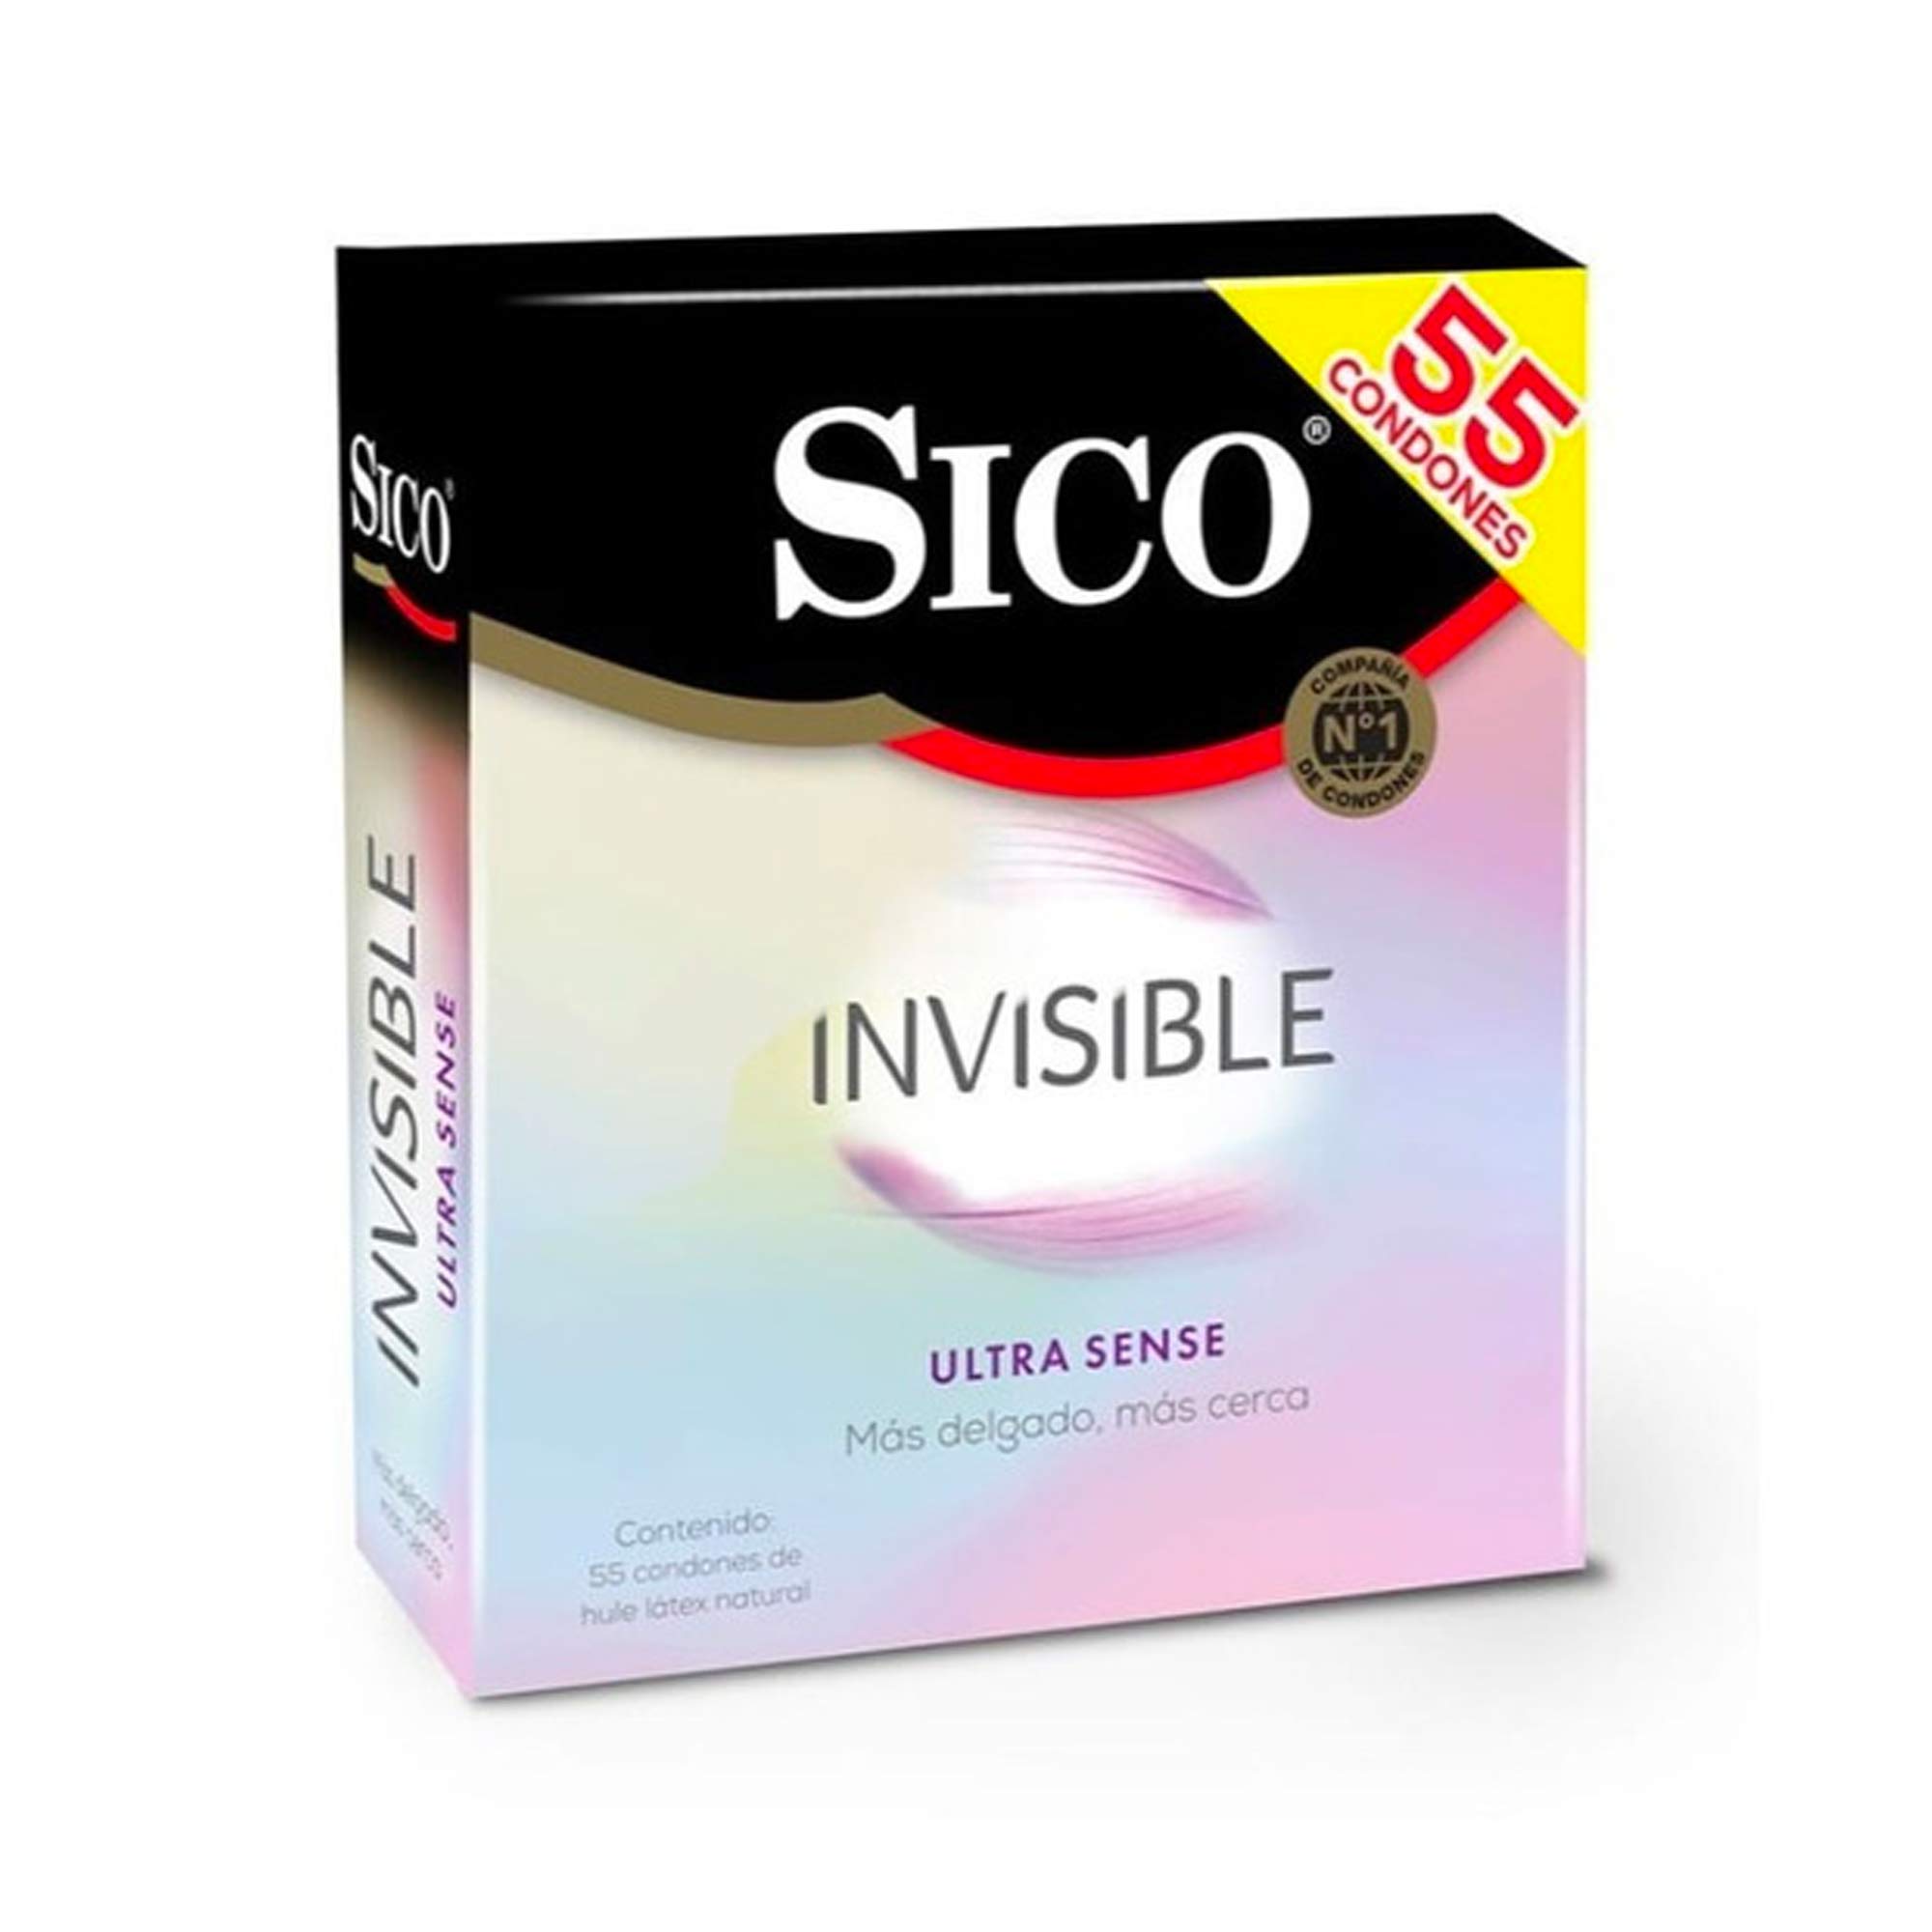 Sico condones invisible (55 piezas)